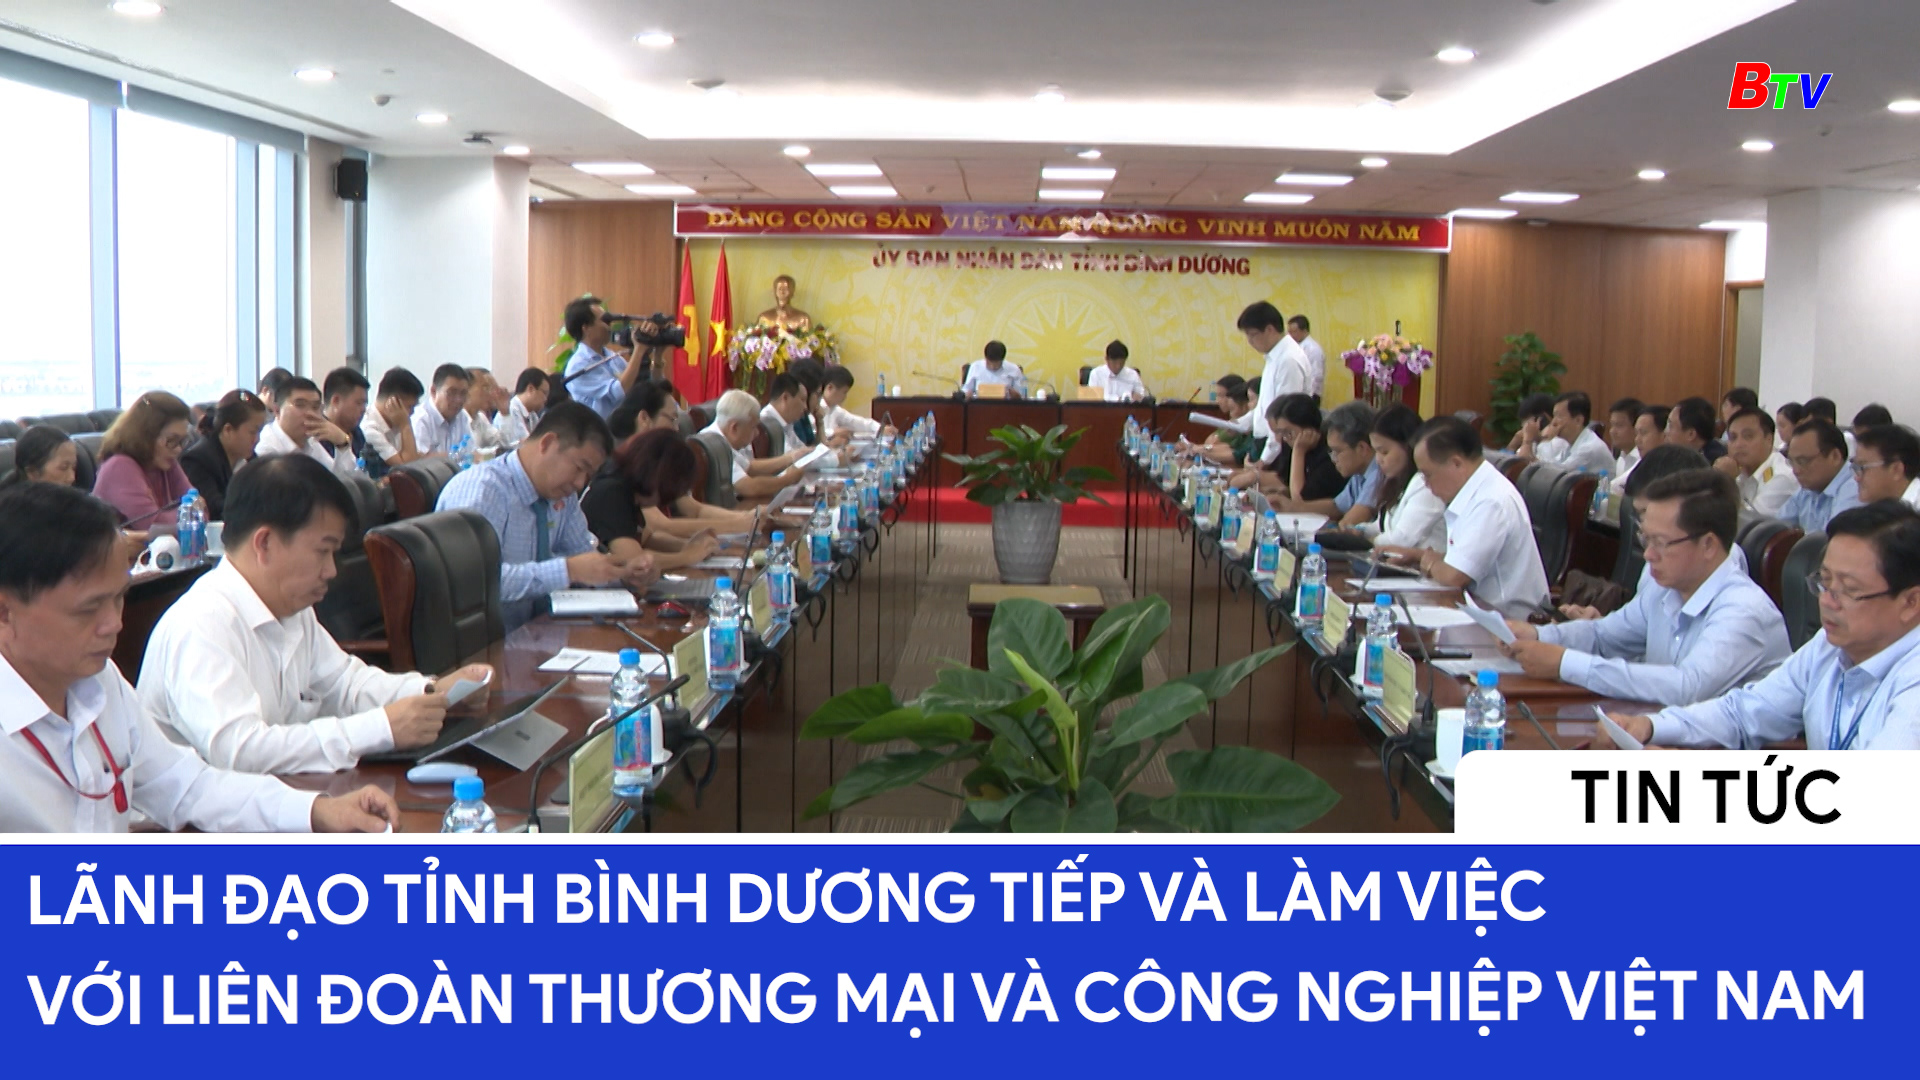 Lãnh đạo tỉnh Bình Dương tiếp và làm việc với liên đoàn Thương mại và công nghiệp Việt Nam